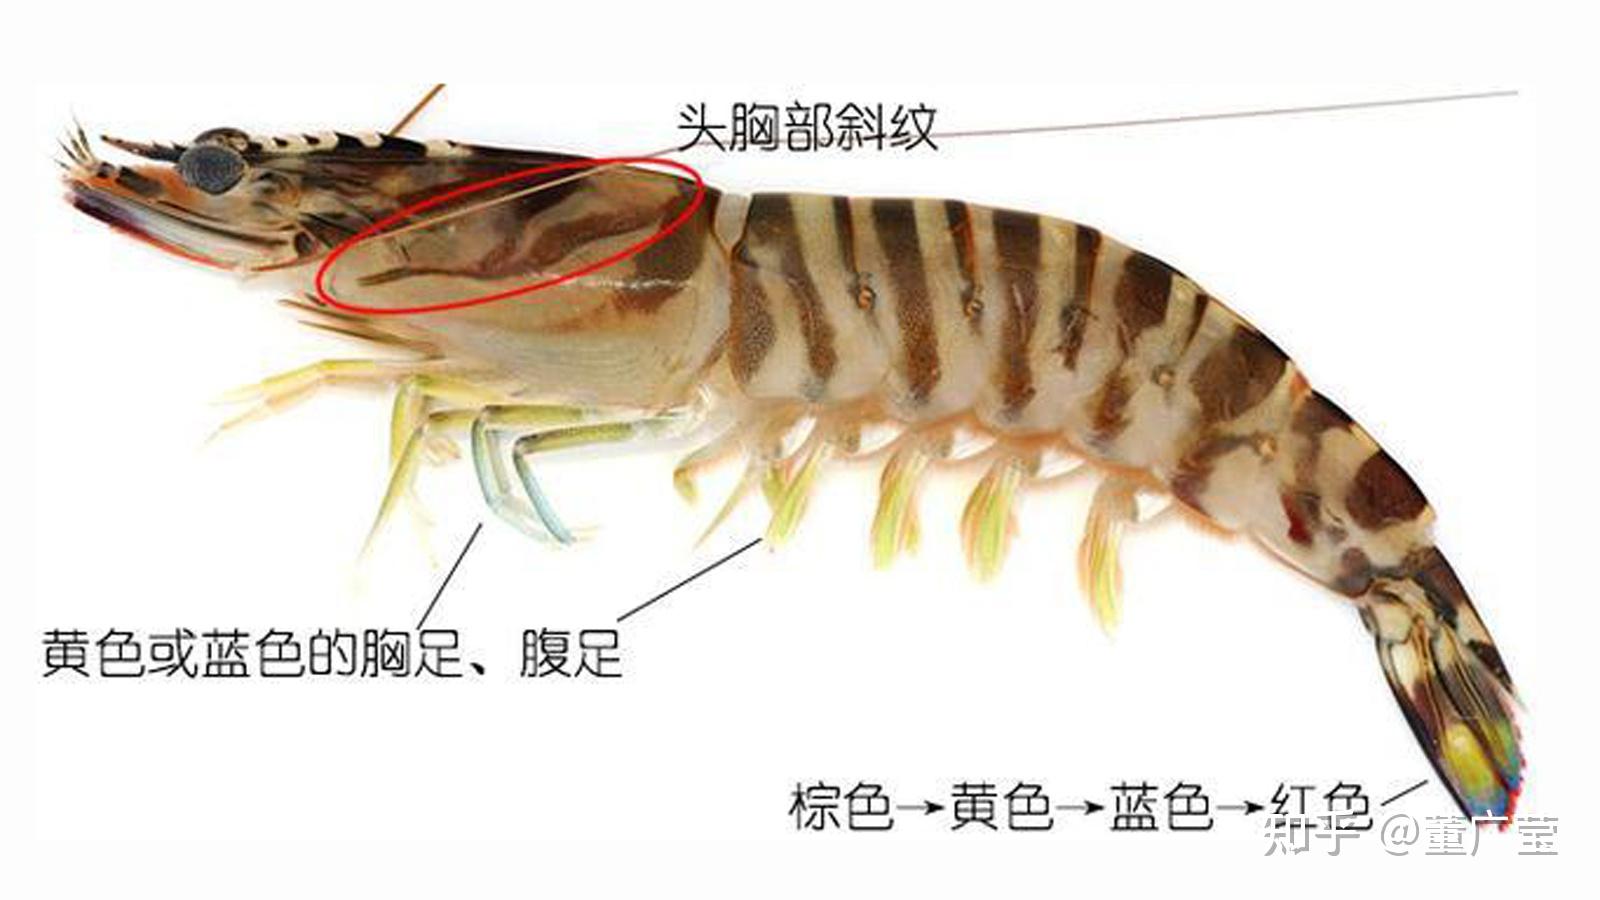 虾的种类有哪些?25种常见虾,河虾海虾哪种最好吃?你吃过哪几种?